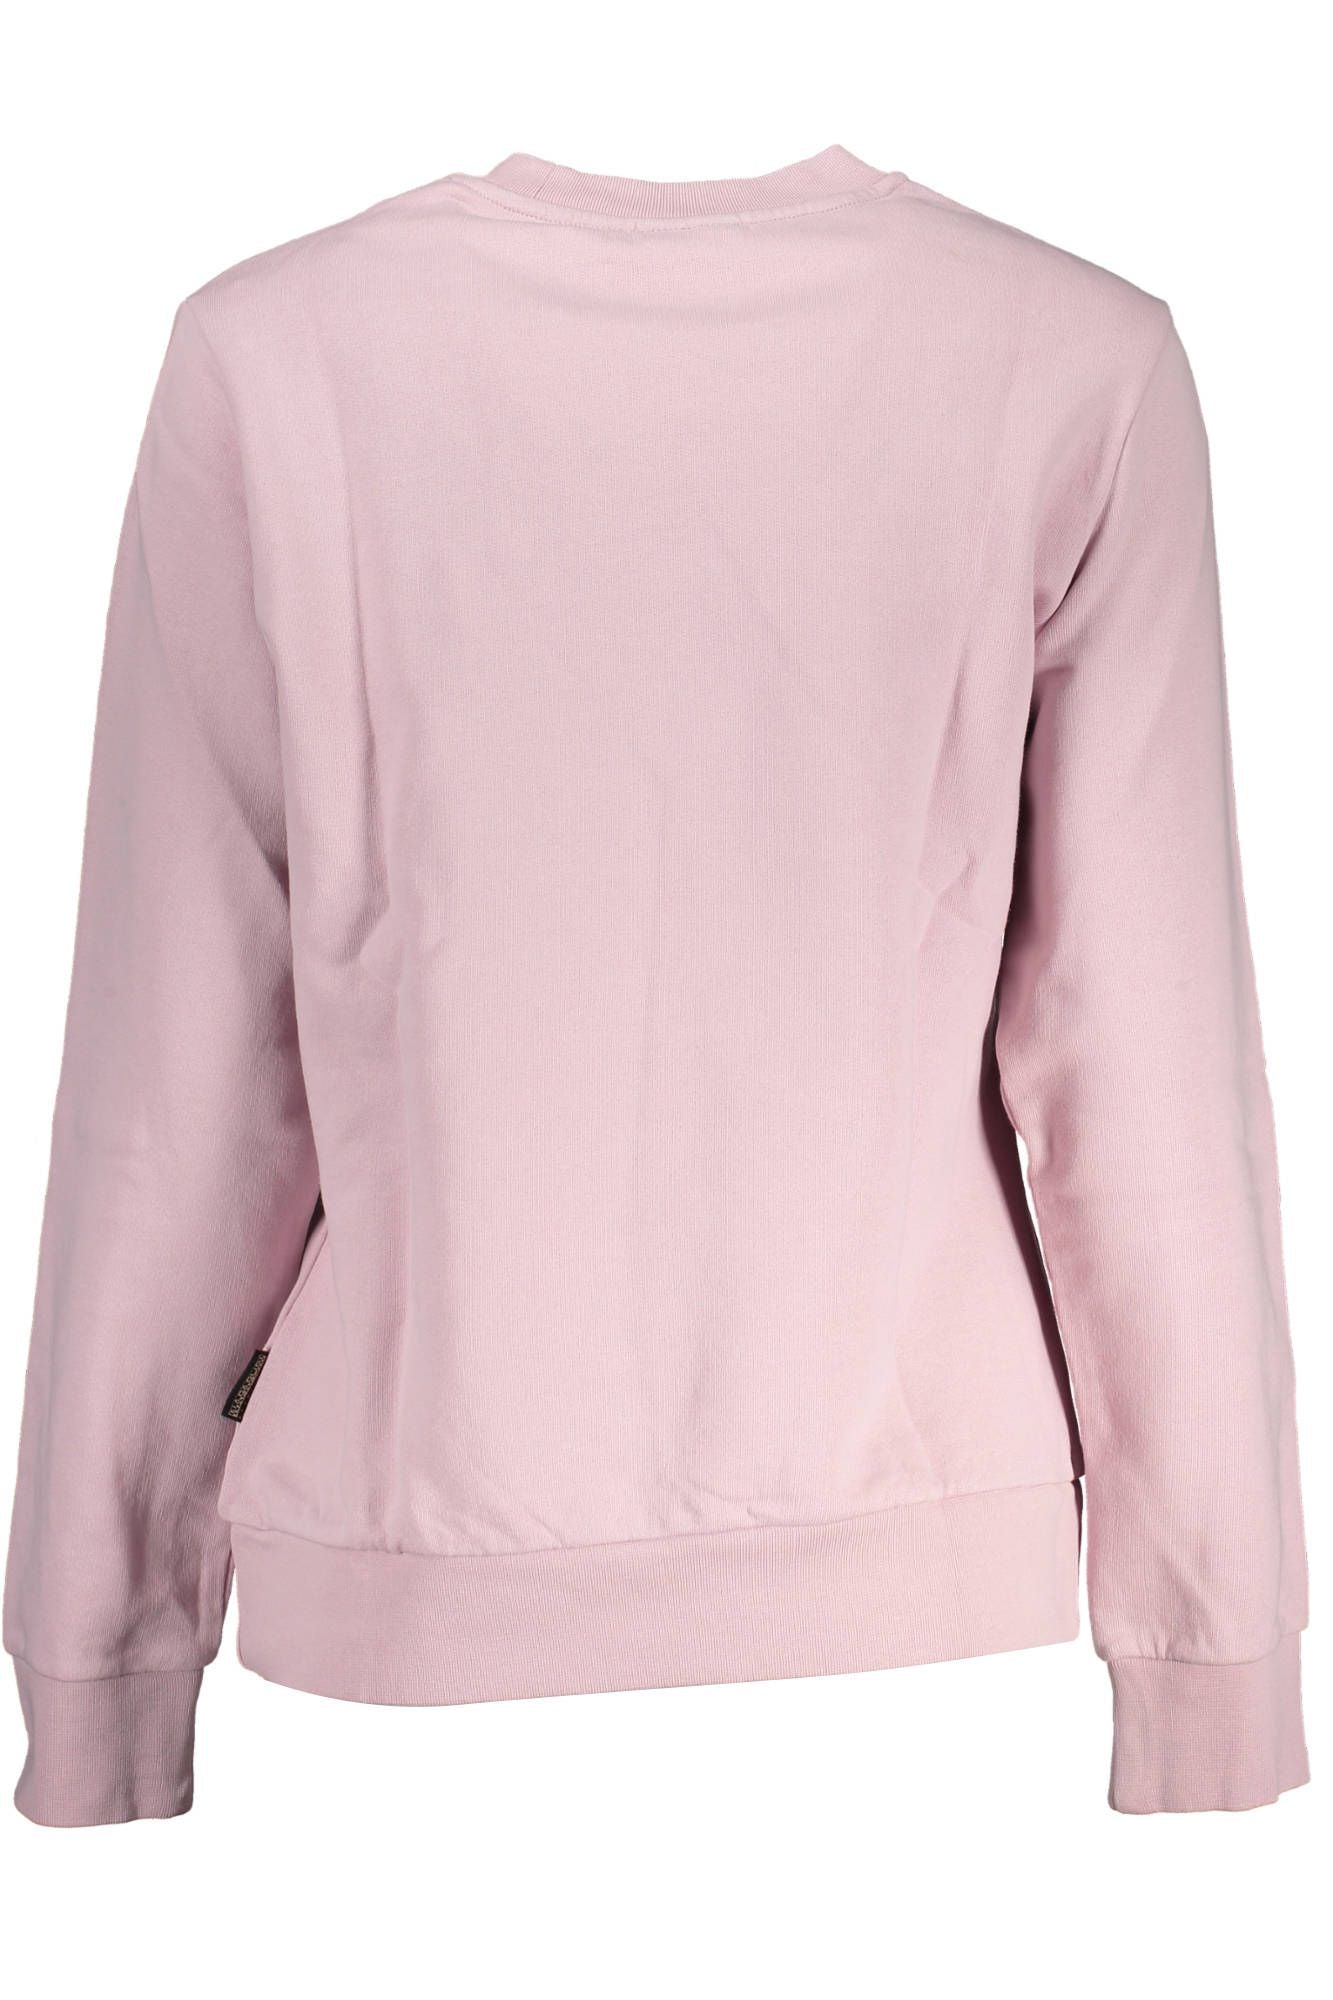 Pink Cotton Crew Neck Embroidered Sweatshirt